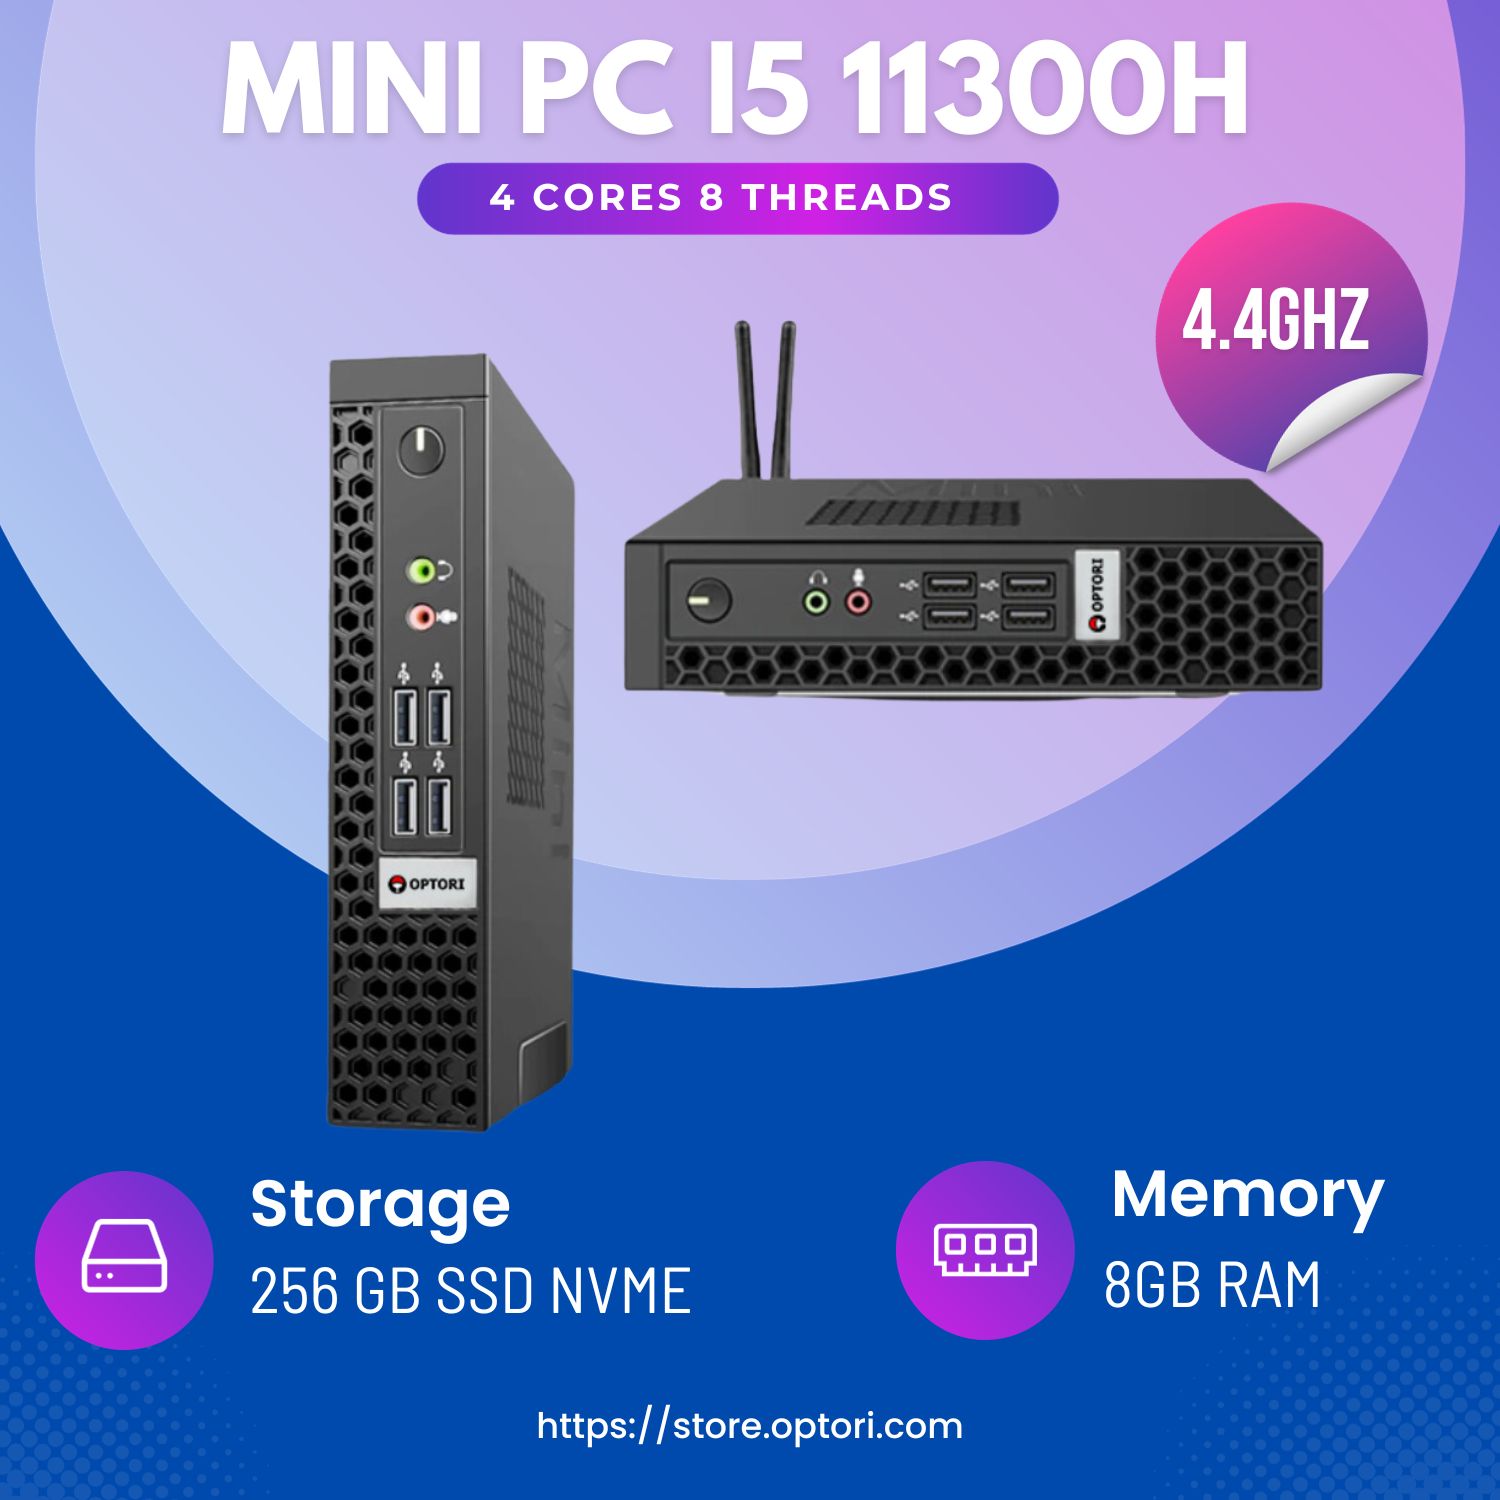 Máy tính để bàn – PC Gaming – NUC INTEL i5 11300H  4 cores 8 threads – 4.4Ghz (Hàng chính hãng)